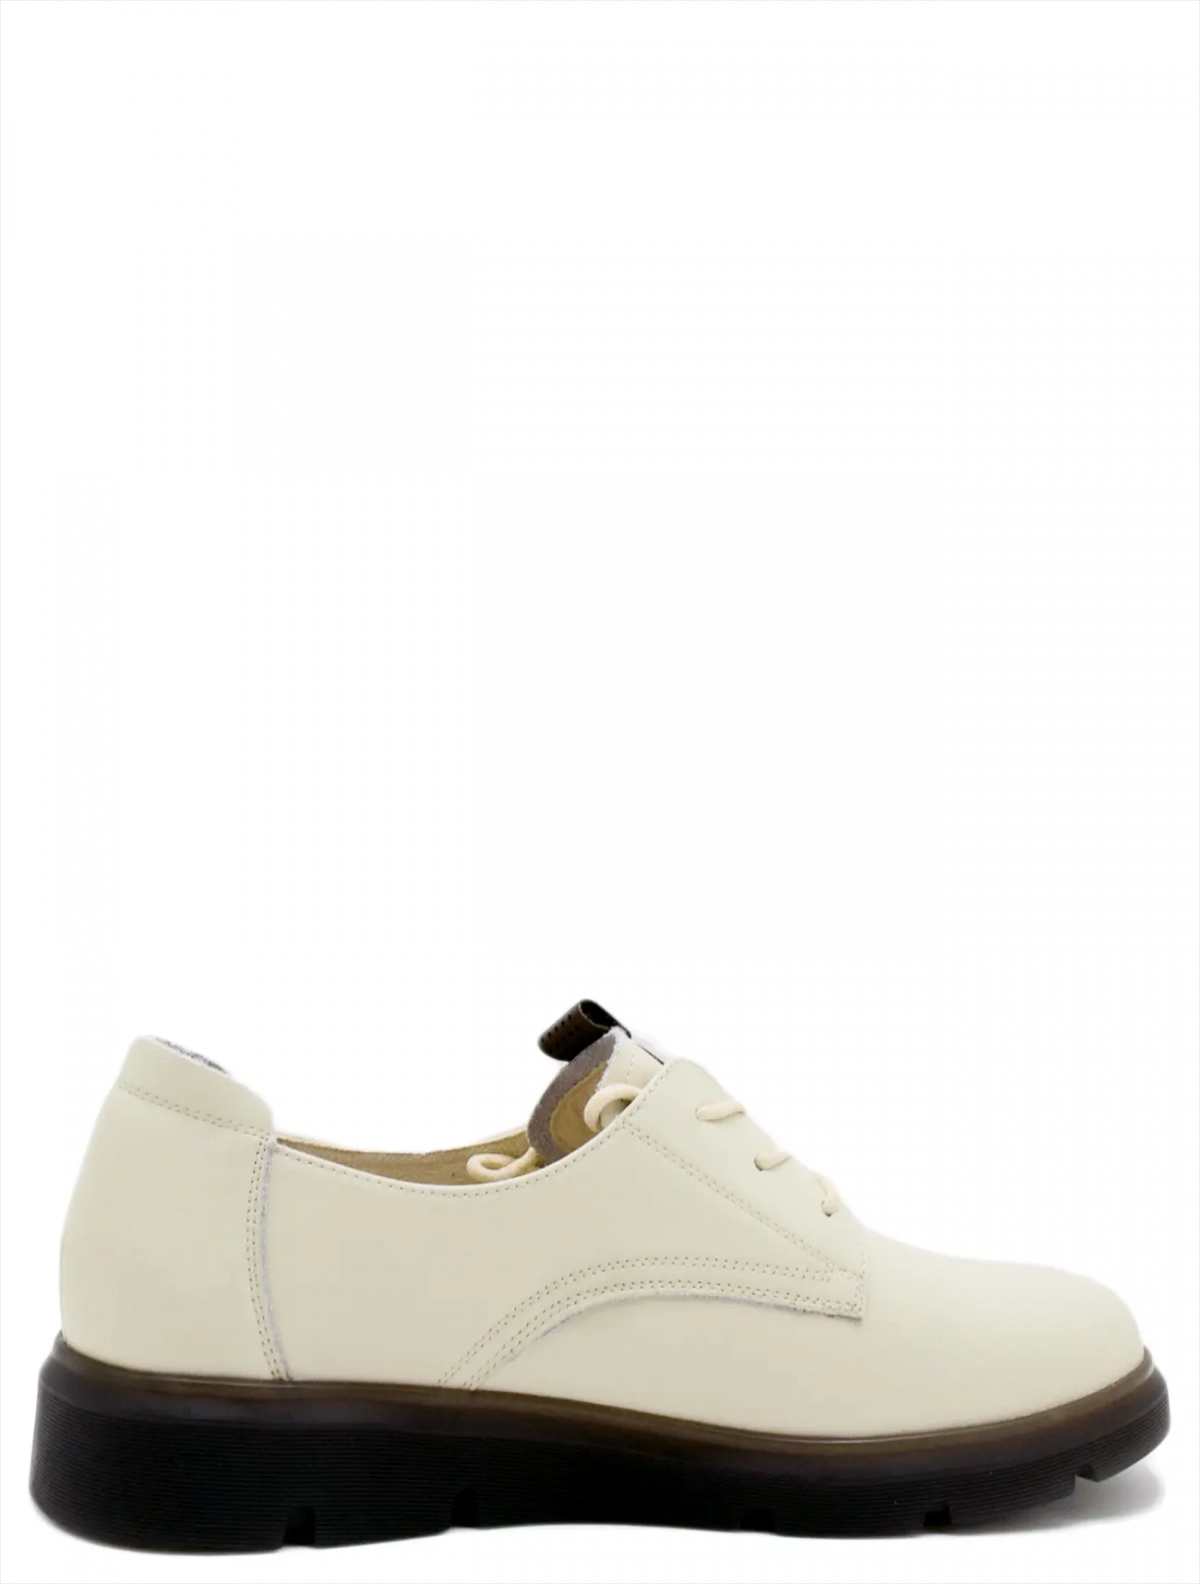 Baden RJ165-021 женские туфли